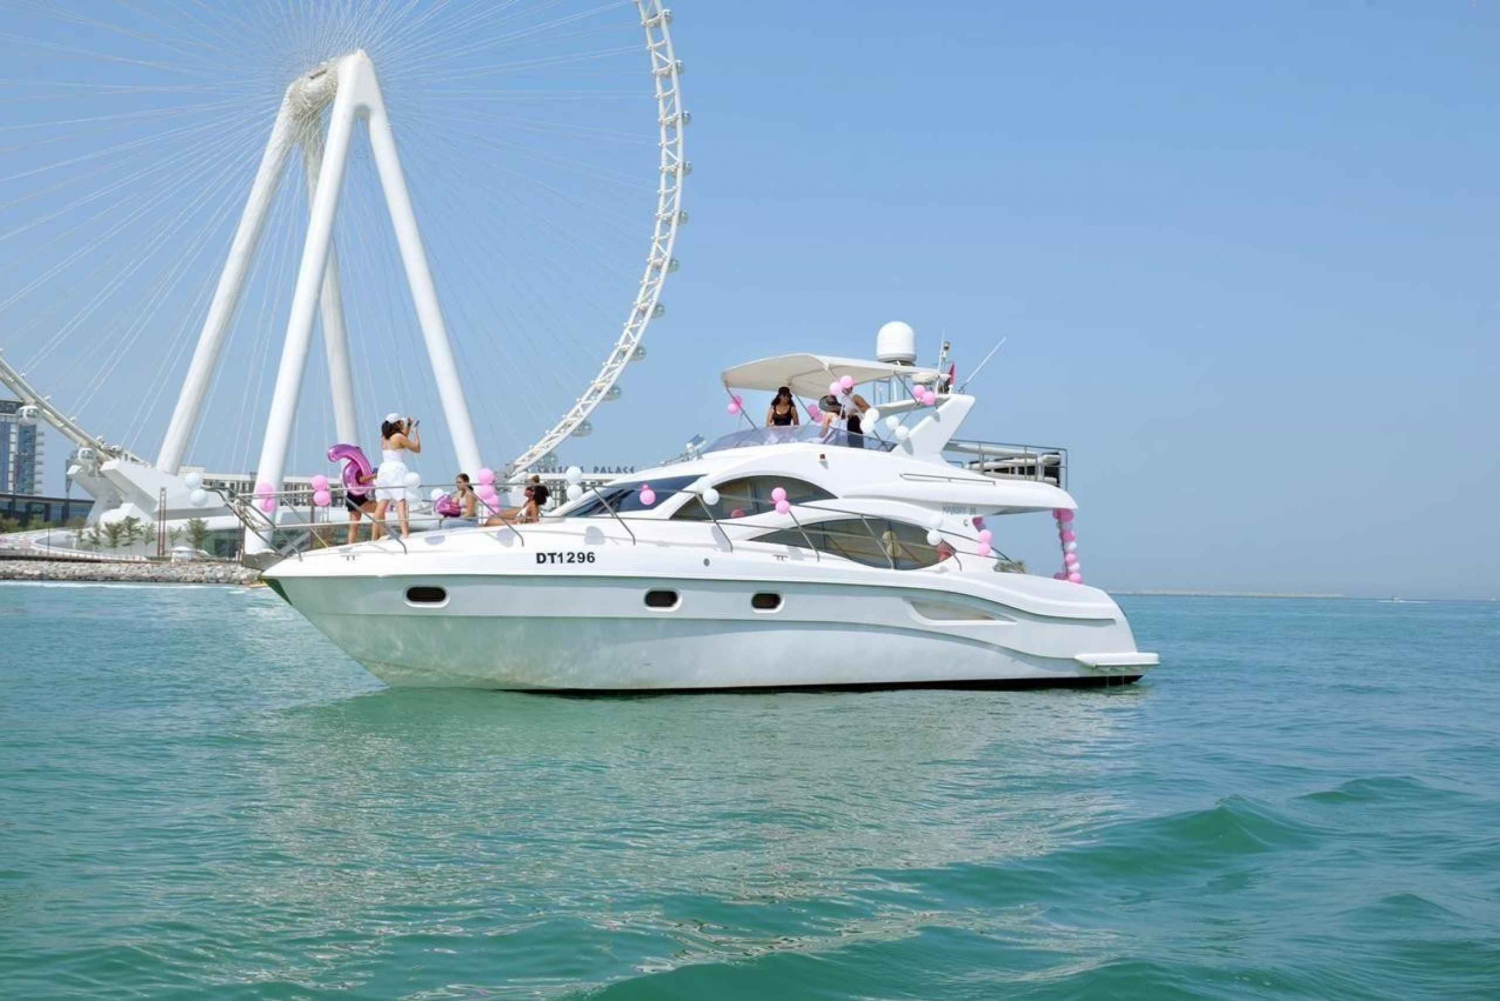 Crucero privado de lujo en Dubai en un moderno yate de 15 metros